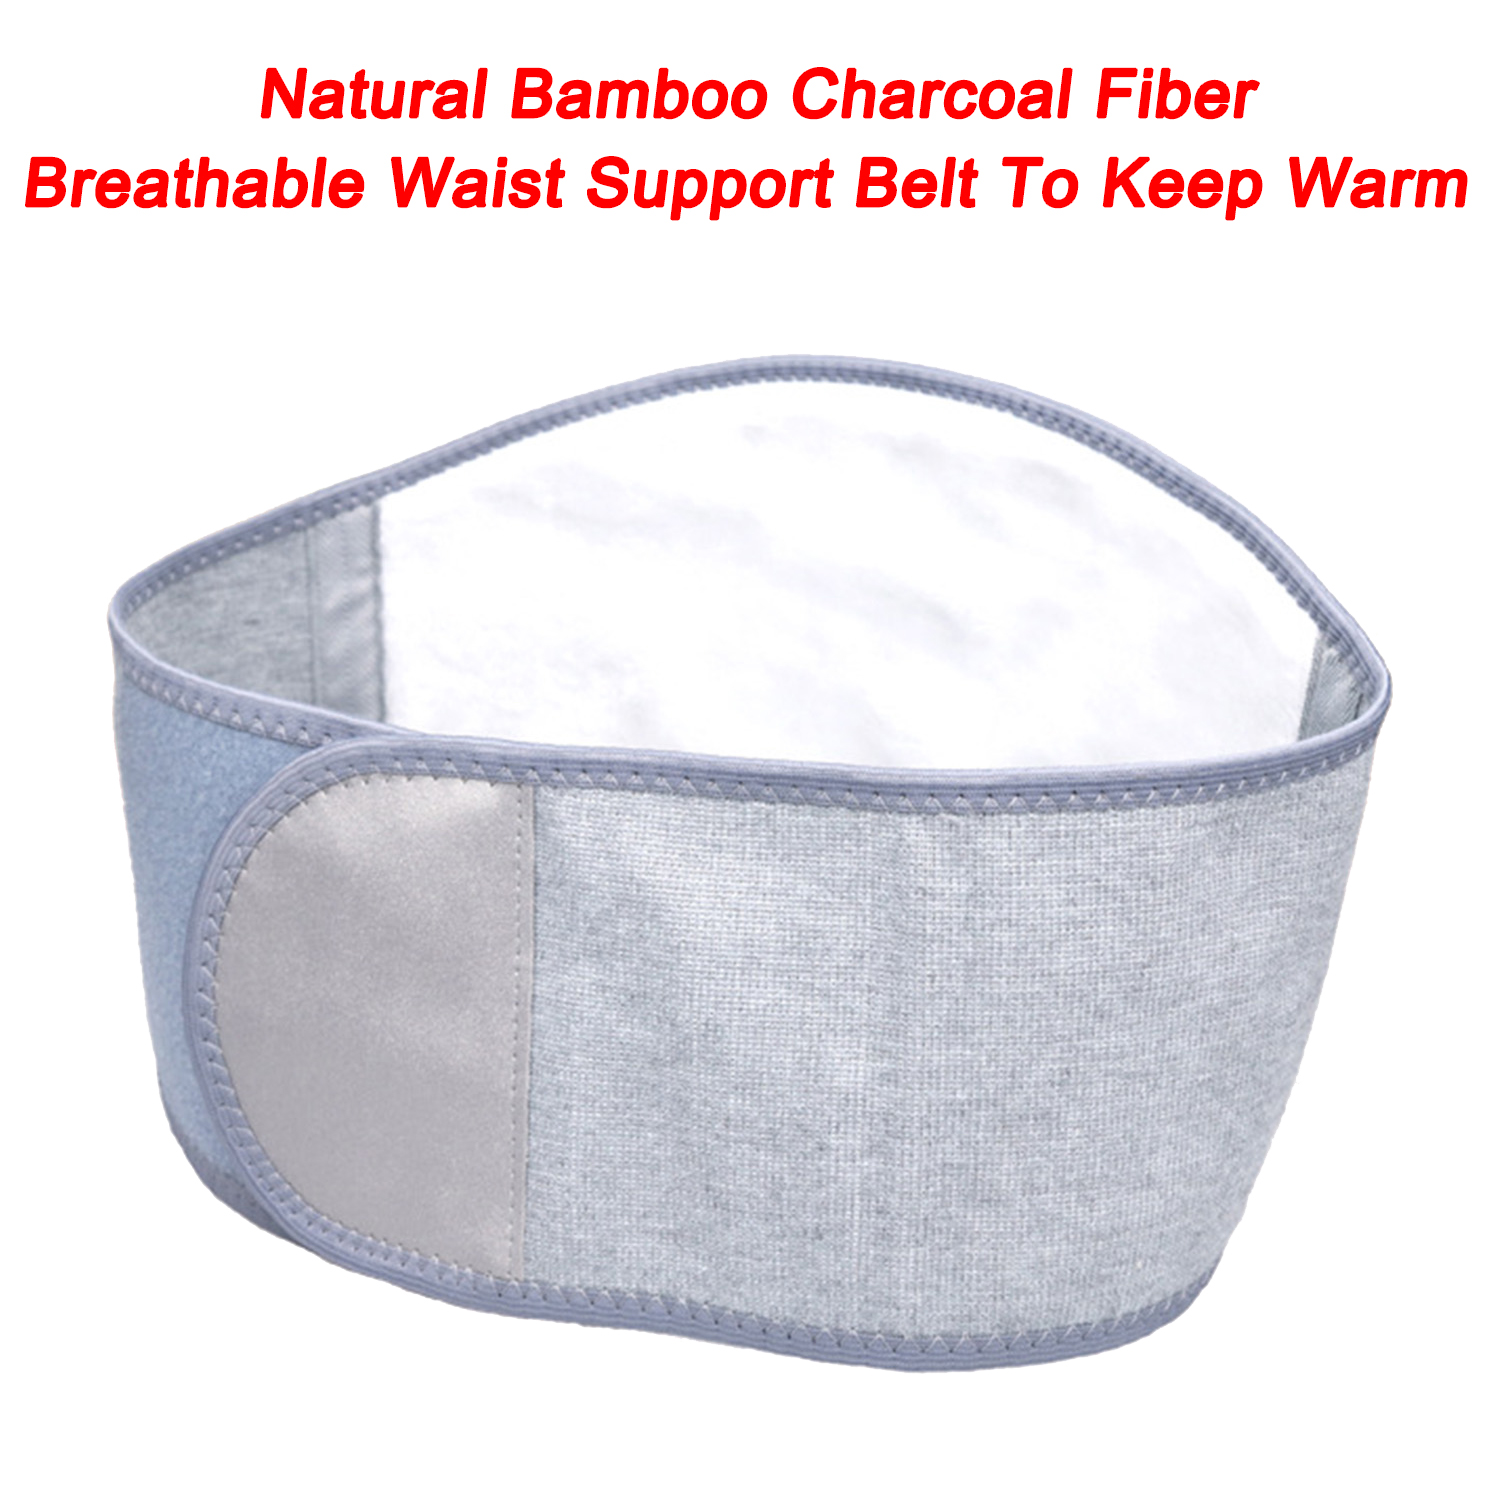 Cintura que adelgaza la correa respirable de la ayuda de la cintura de la fibra natural del carbón de leña de bambú para mantener caliente